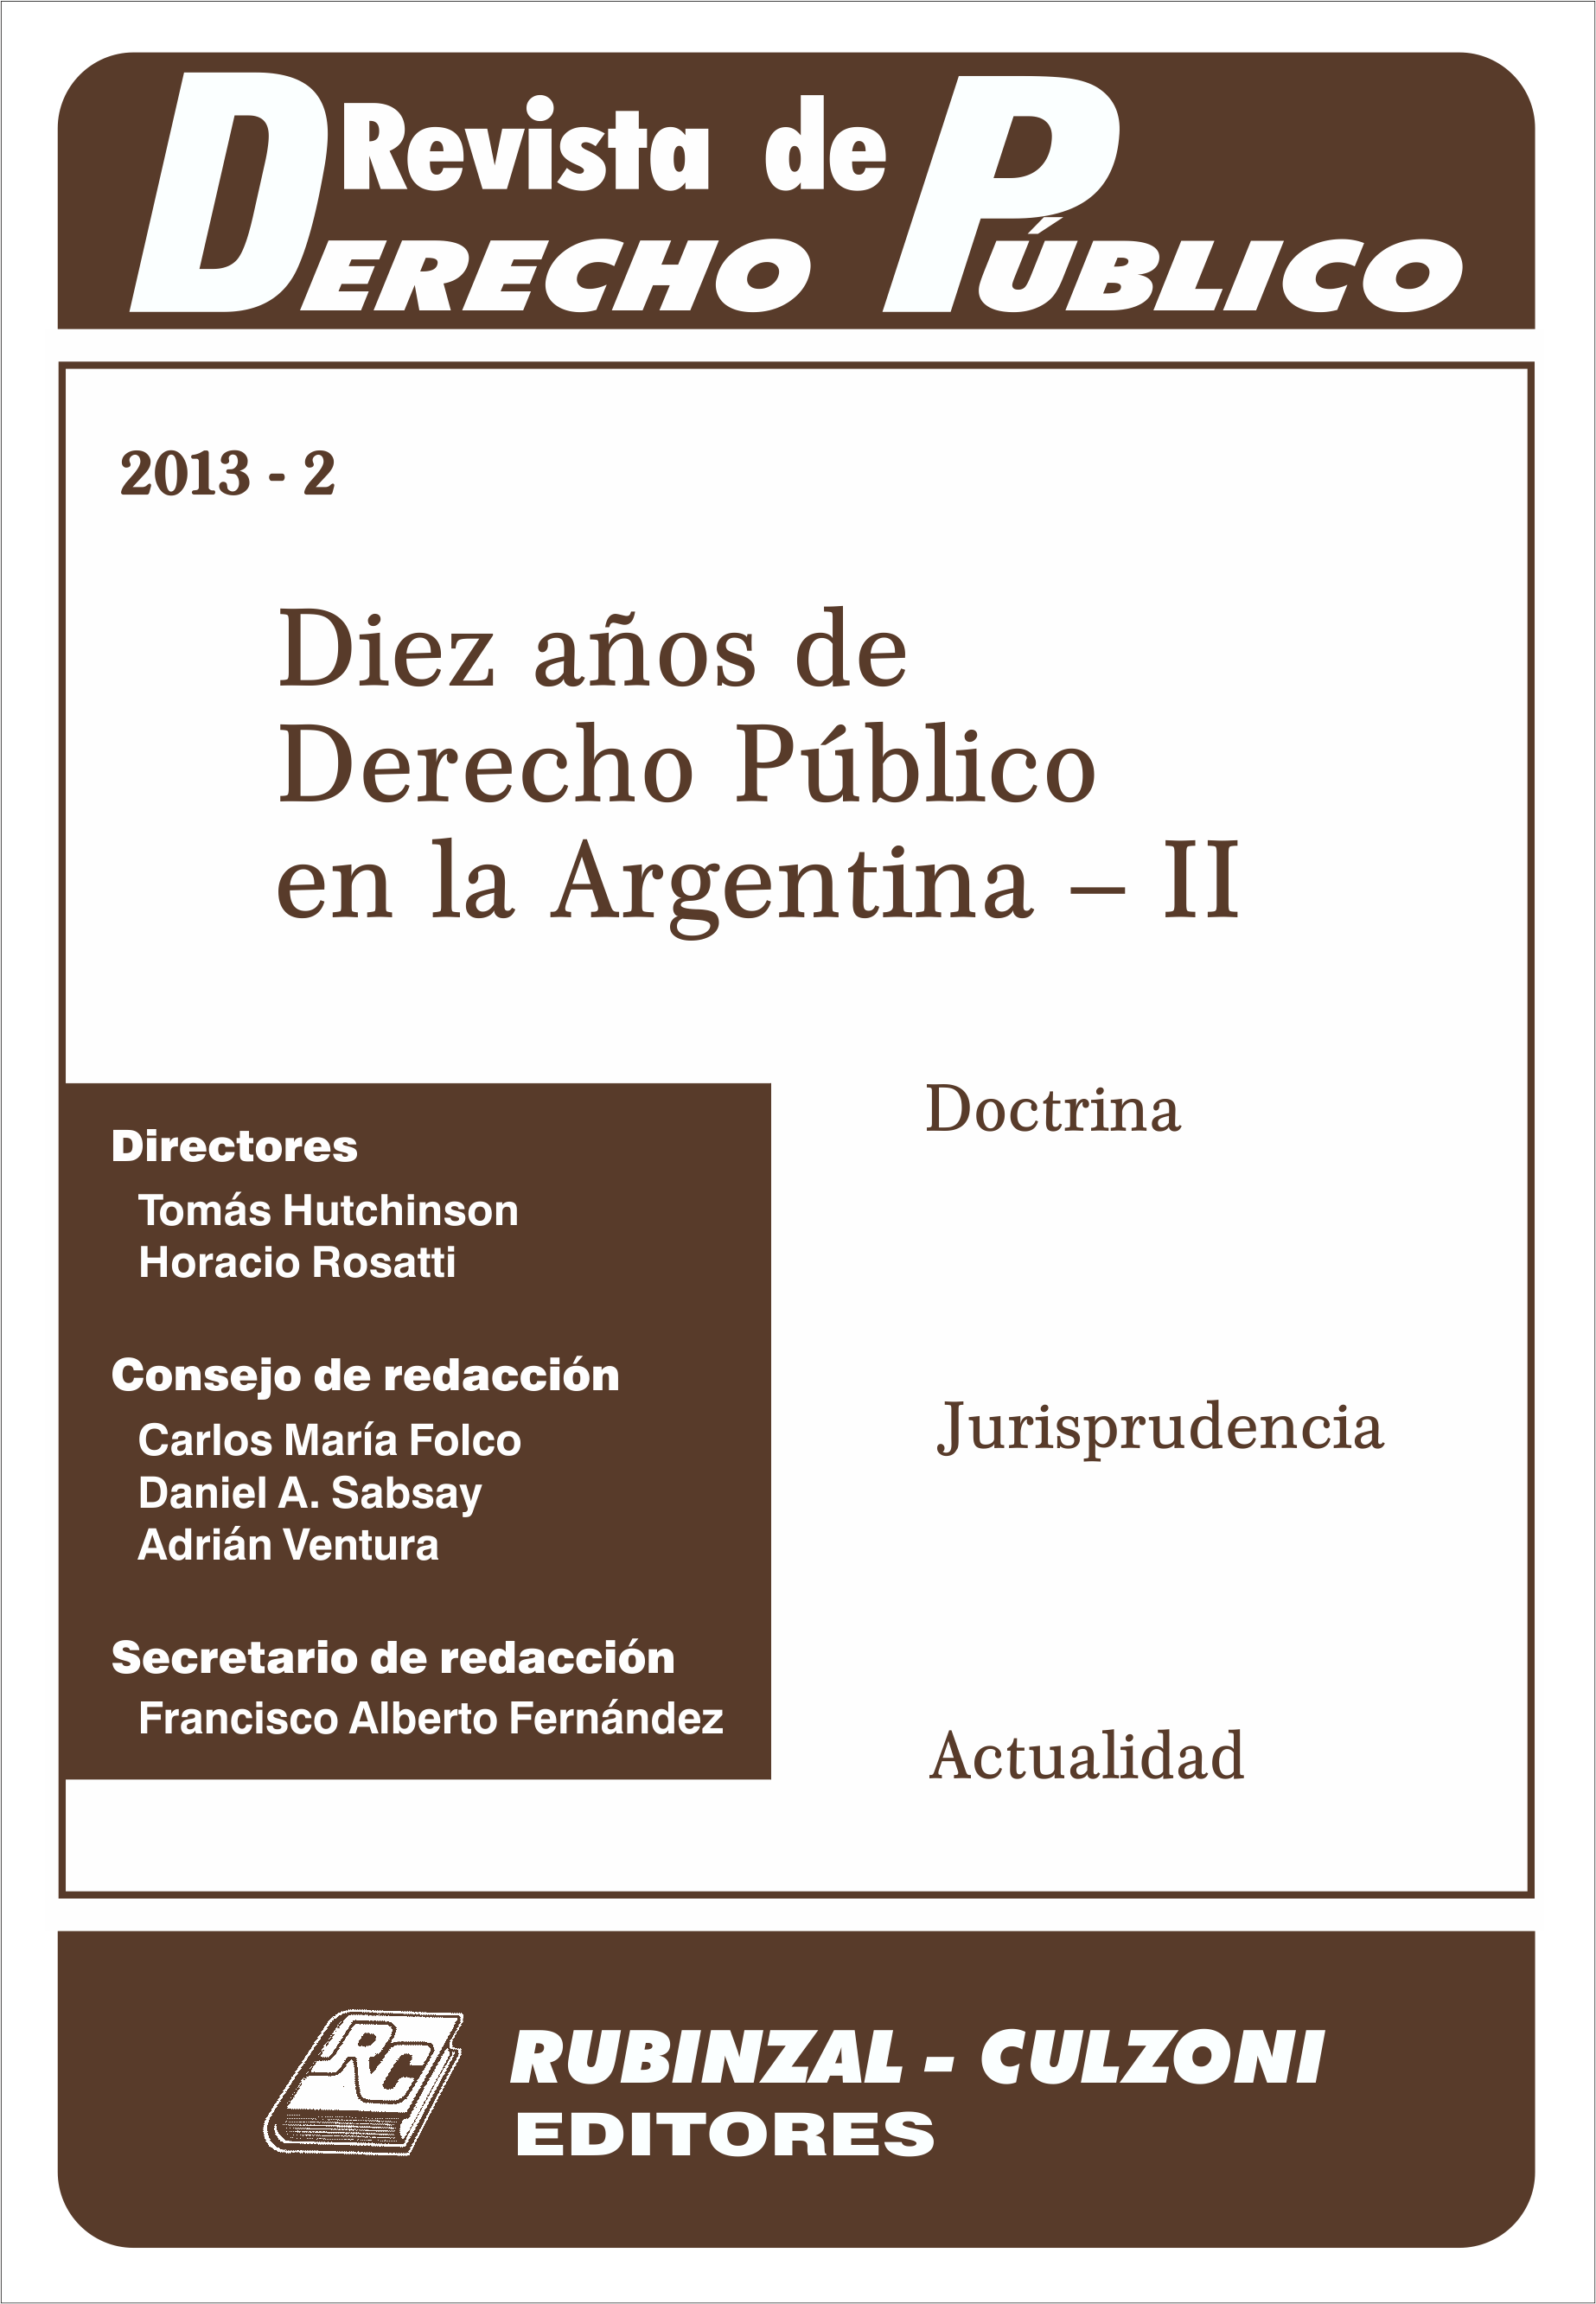 Revista de Derecho Público - Diez años de Derecho Público en la Argentina - II